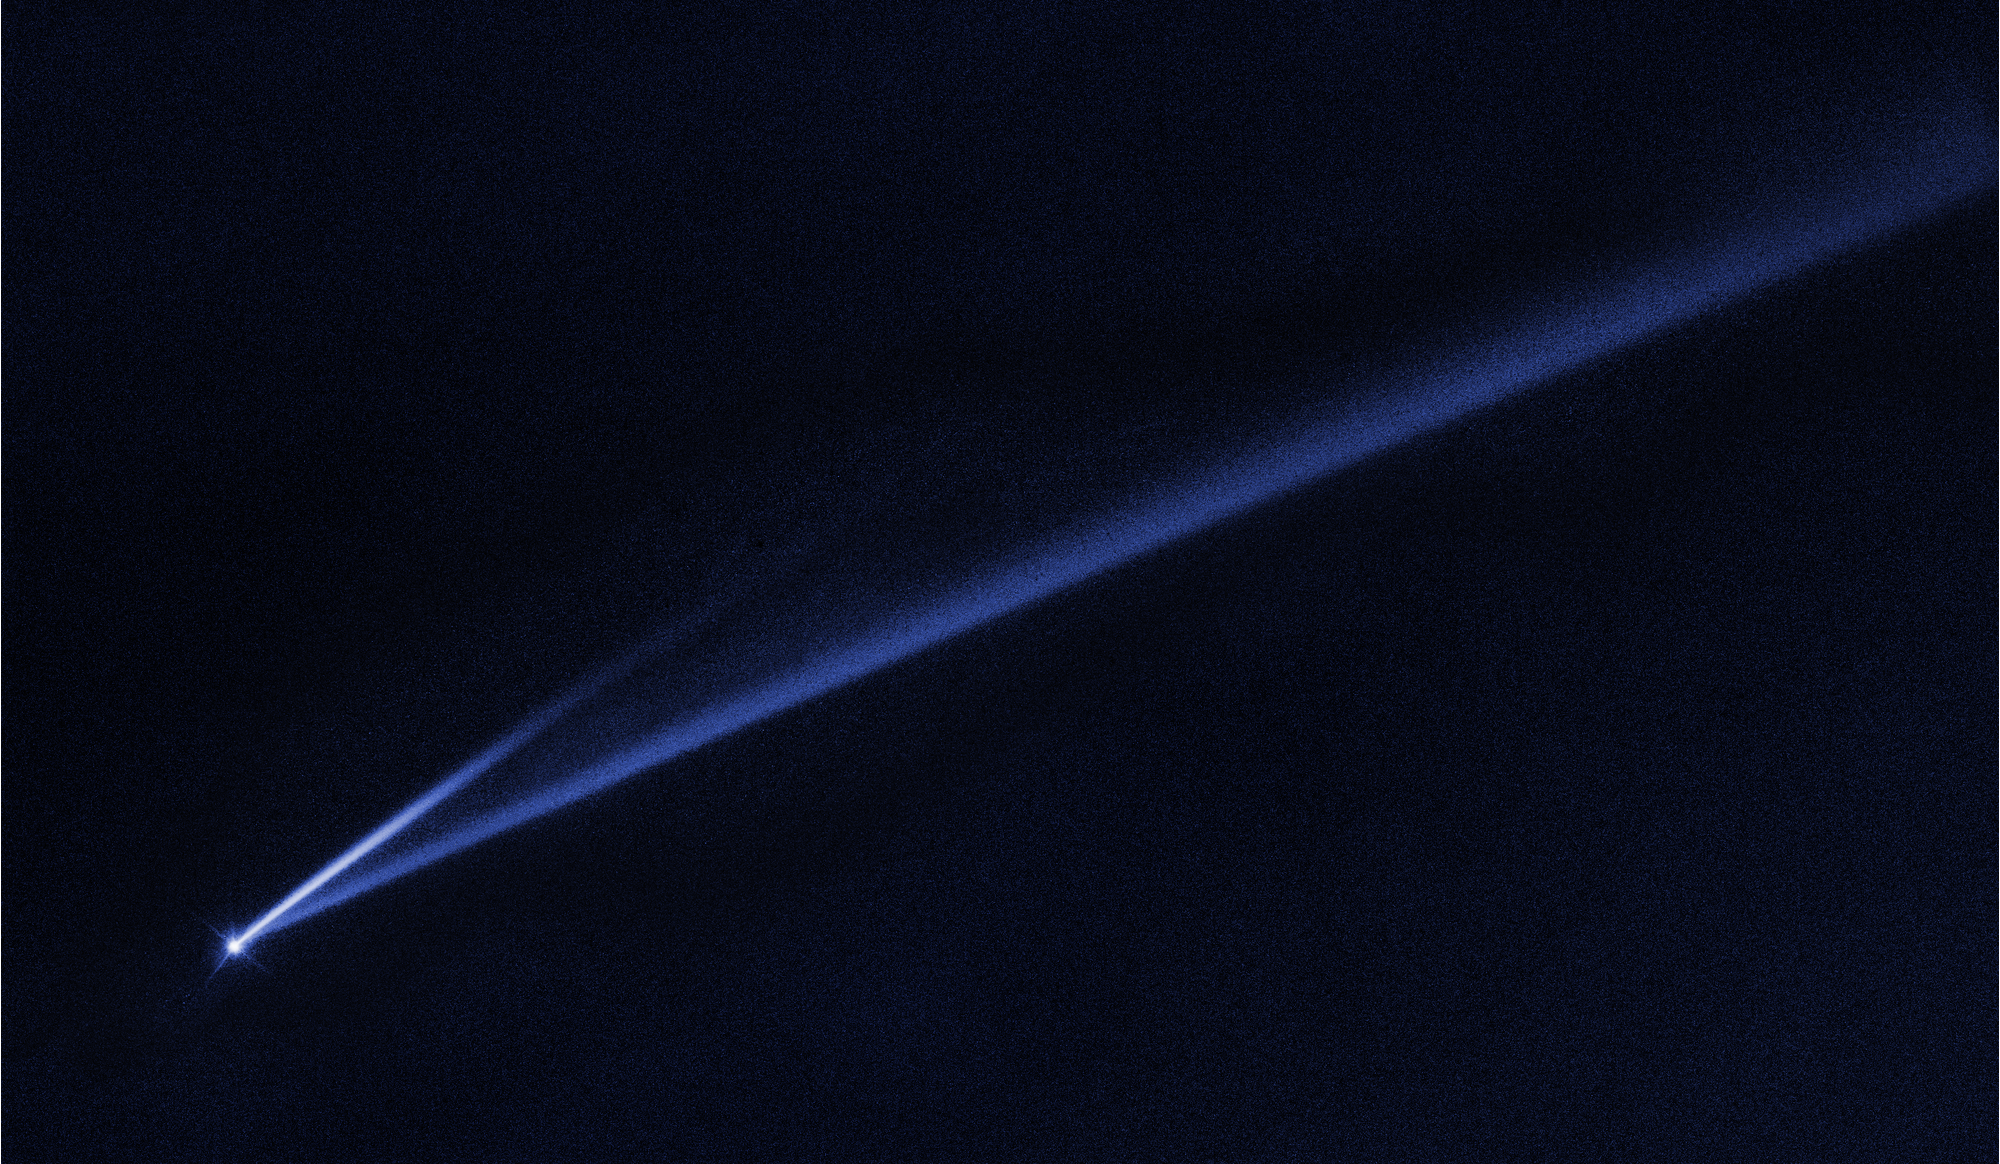 Les deux jets de poussière jaillissant de l’astéroïde Gault photographiés par le télescope spatial Hubble. © Nasa, ESA, K. Meech et J. Kleyna (University of Hawaii), O. Hainaut (ESO)